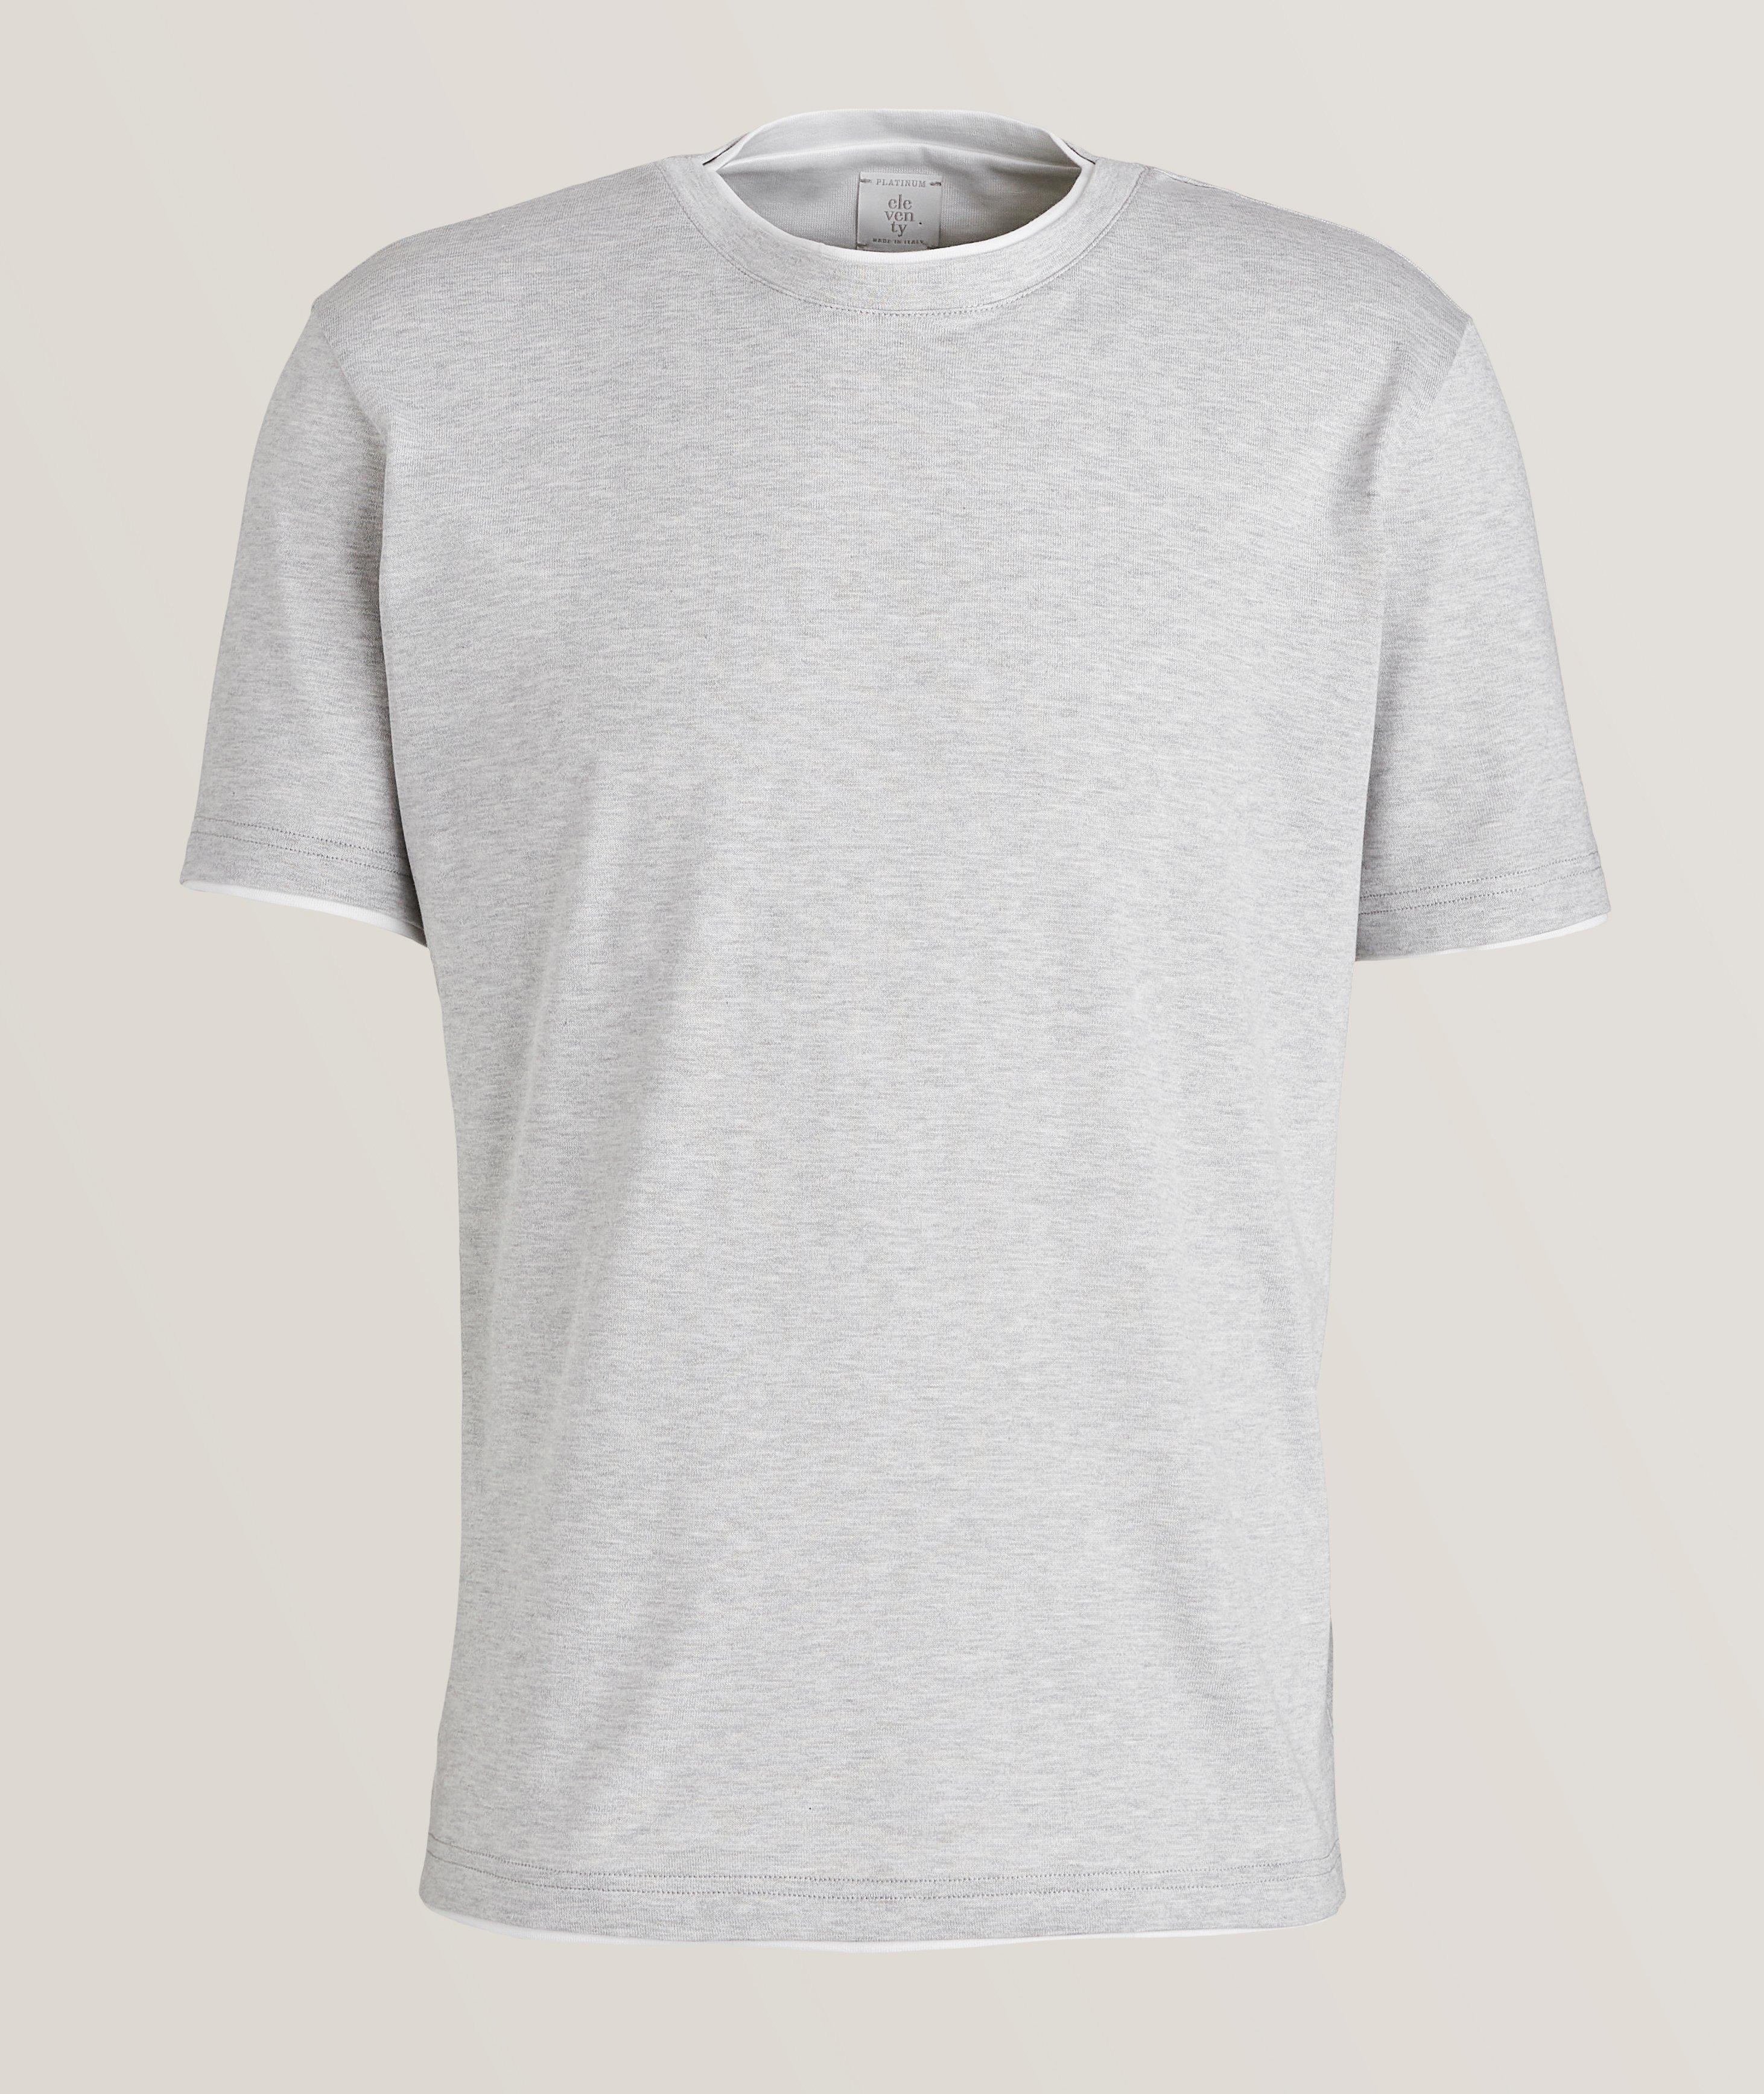 Eleventy Double Layer Contrast Trim Cotton T-Shirt, T-Shirts